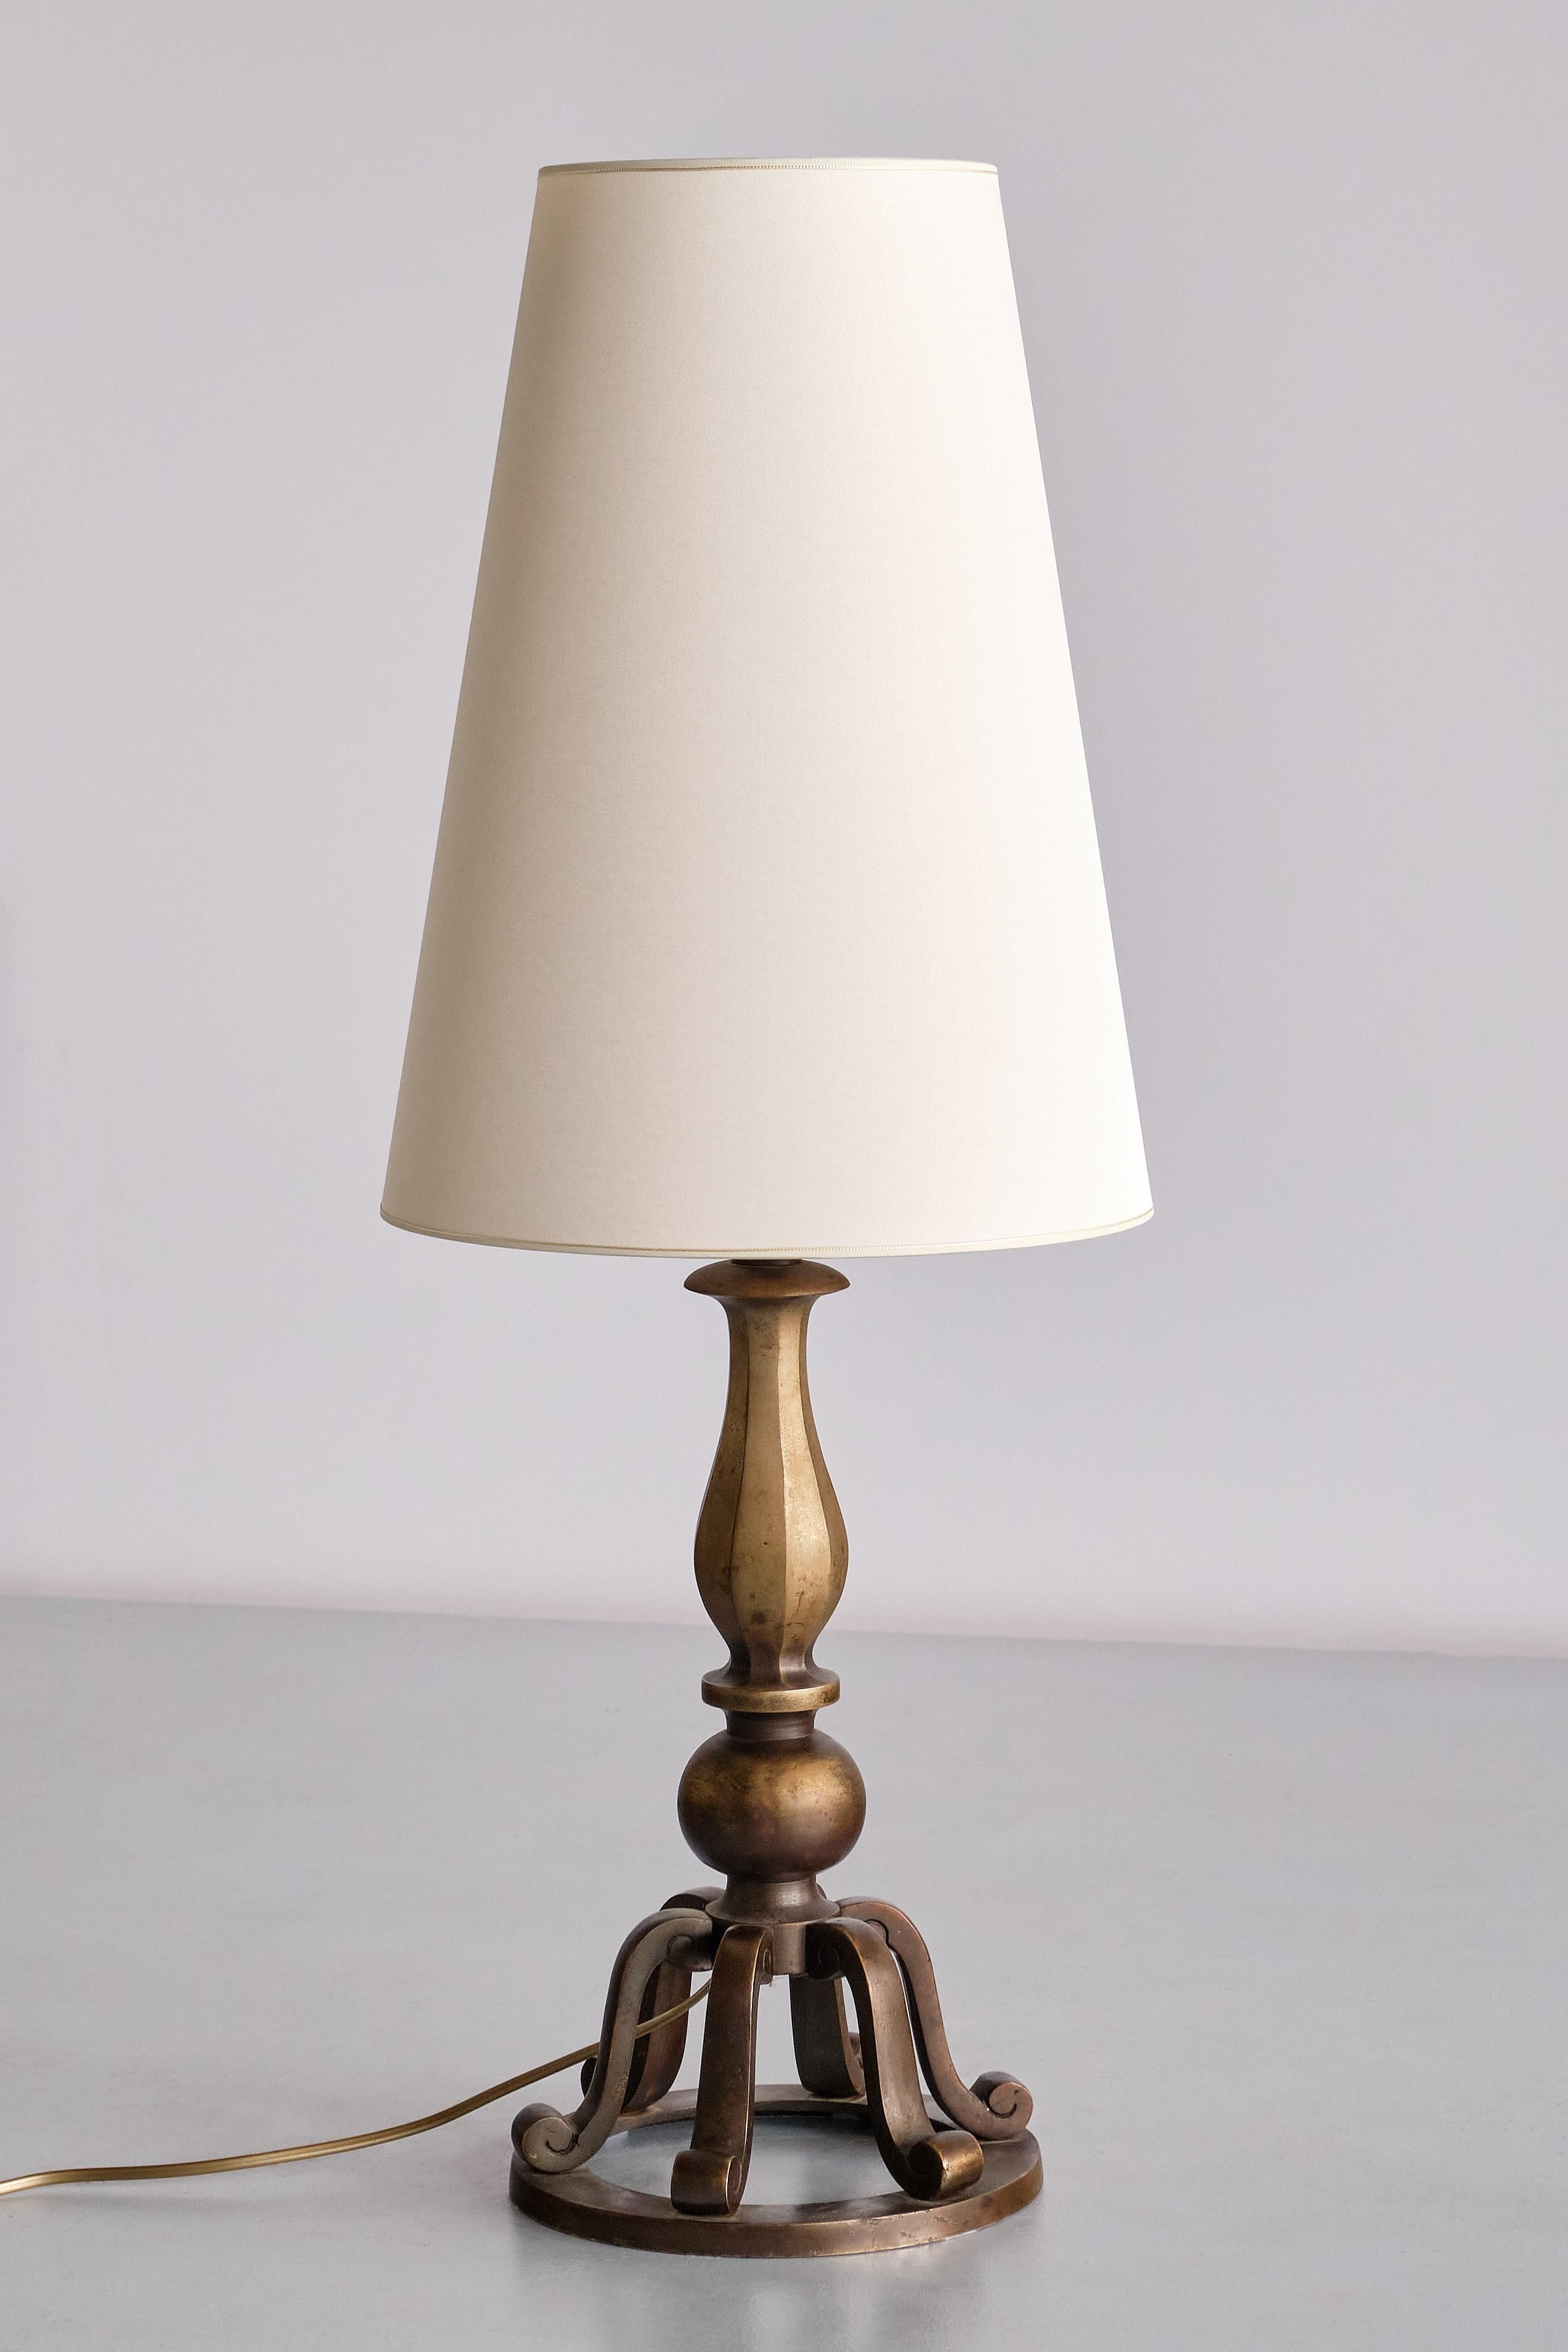 Cette lampe de table remarquable a été produite par l'entreprise C.I.C. Hallberg dans les années 1930. Le design décoratif est caractérisé par le corps en forme de cloche en laiton massif patiné. Base circulaire sur laquelle six éléments incurvés